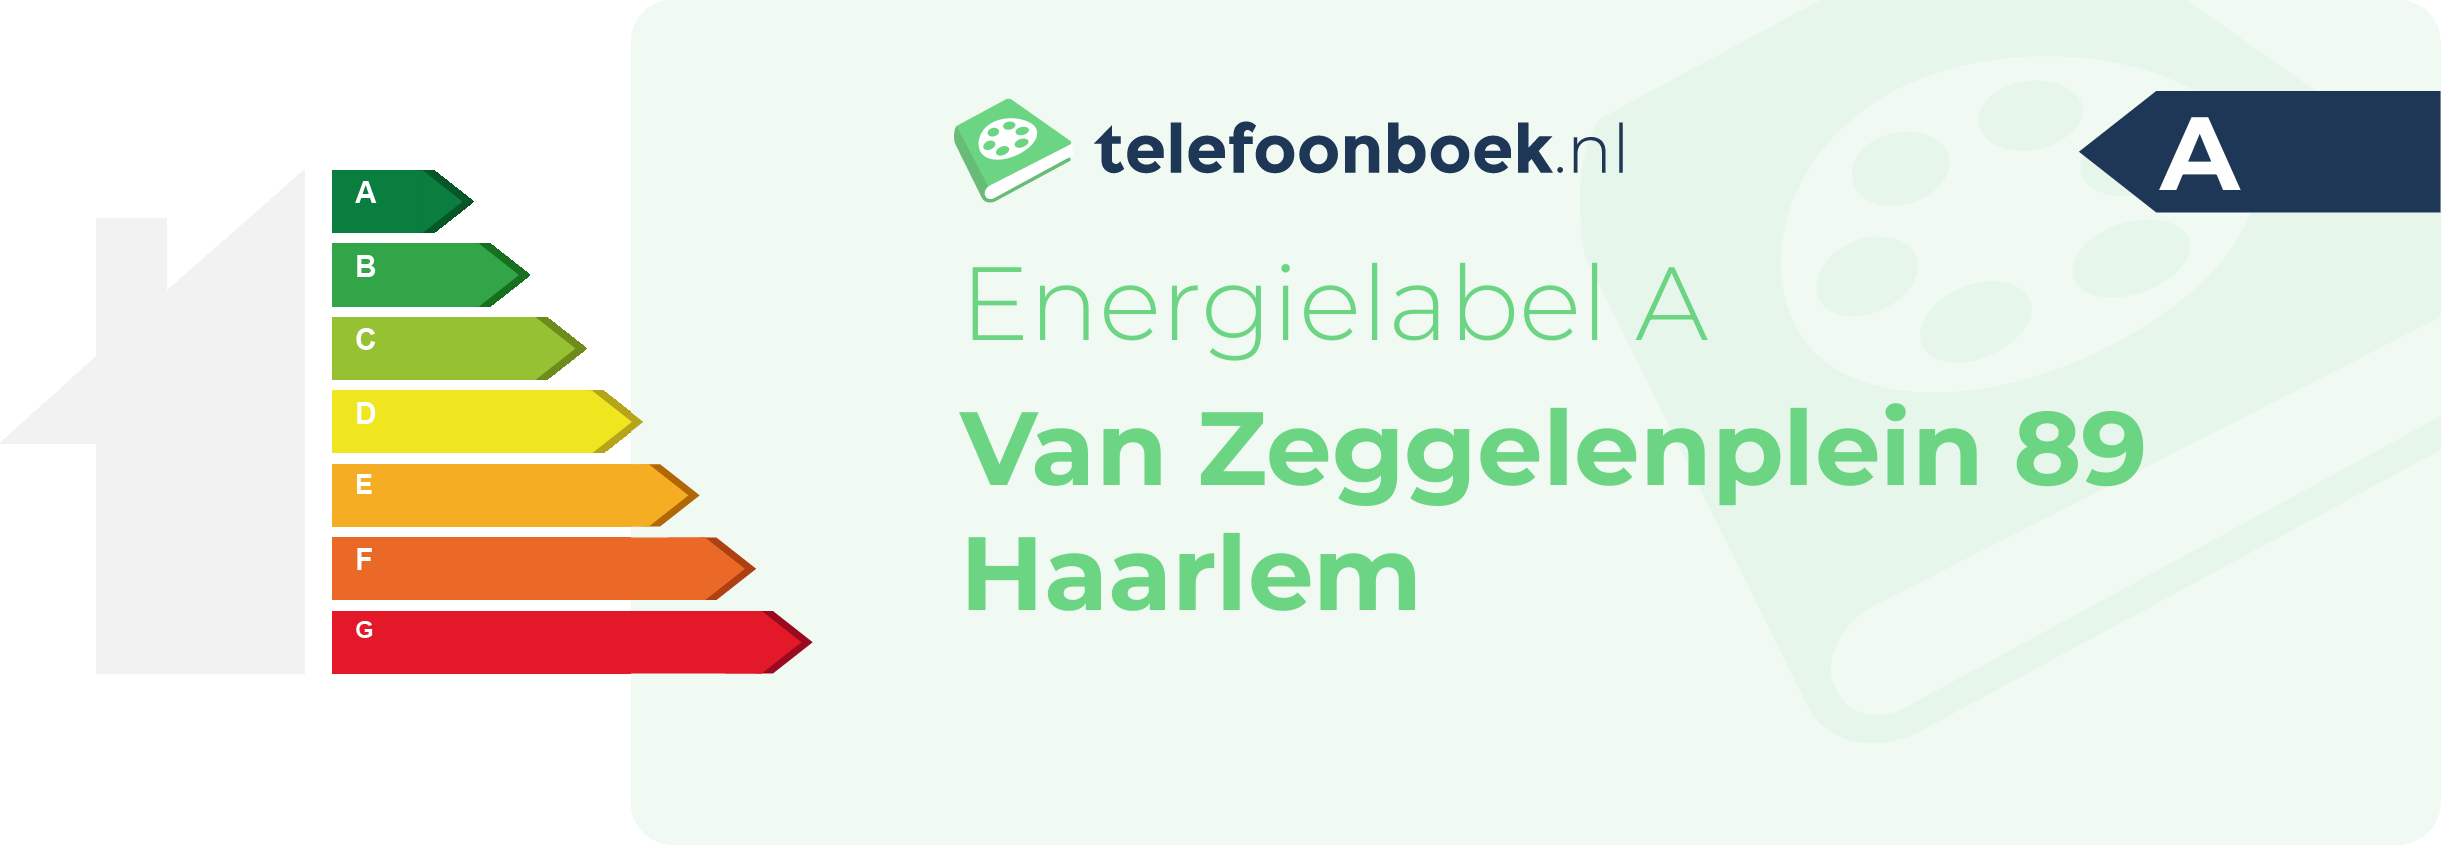 Energielabel Van Zeggelenplein 89 Haarlem